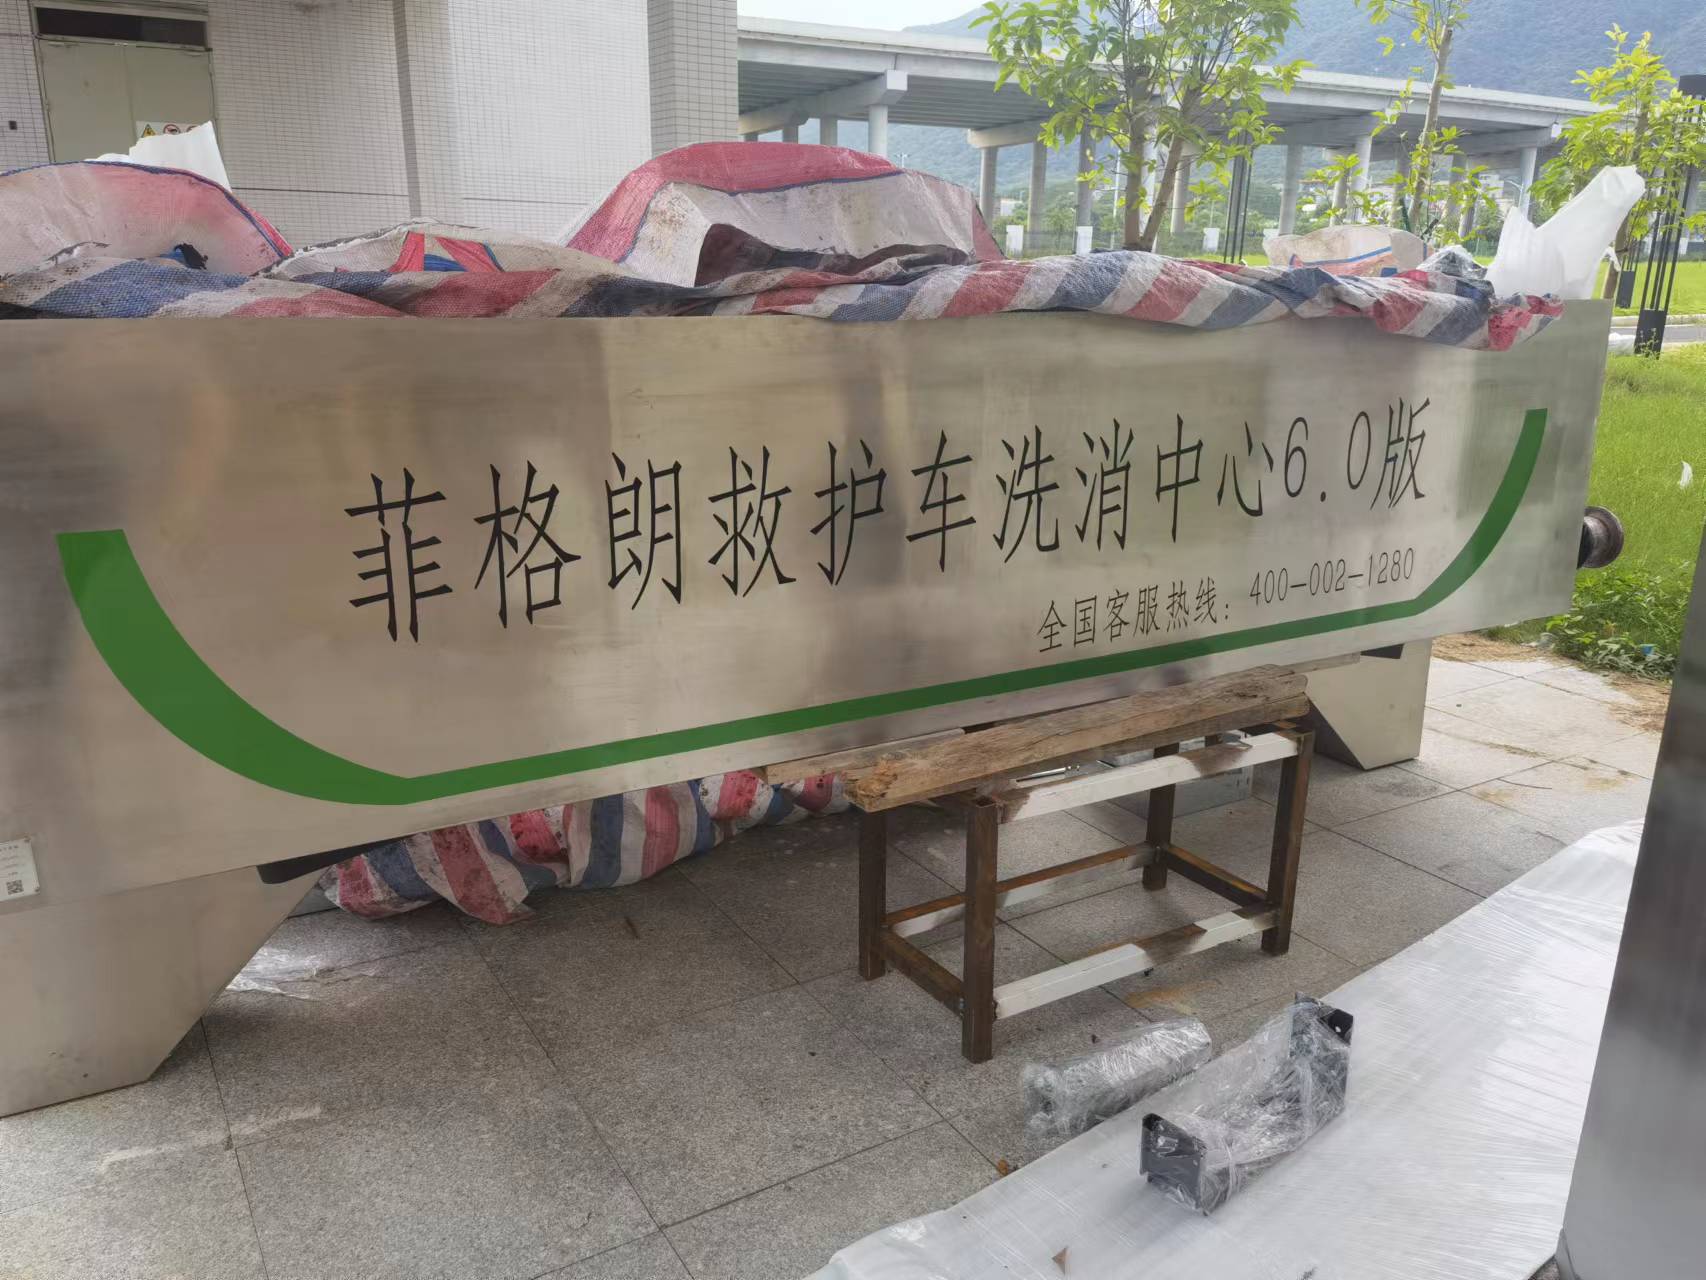 廣東省婦幼保健院菲格朗救護車洗消中心系統投入使用插圖3